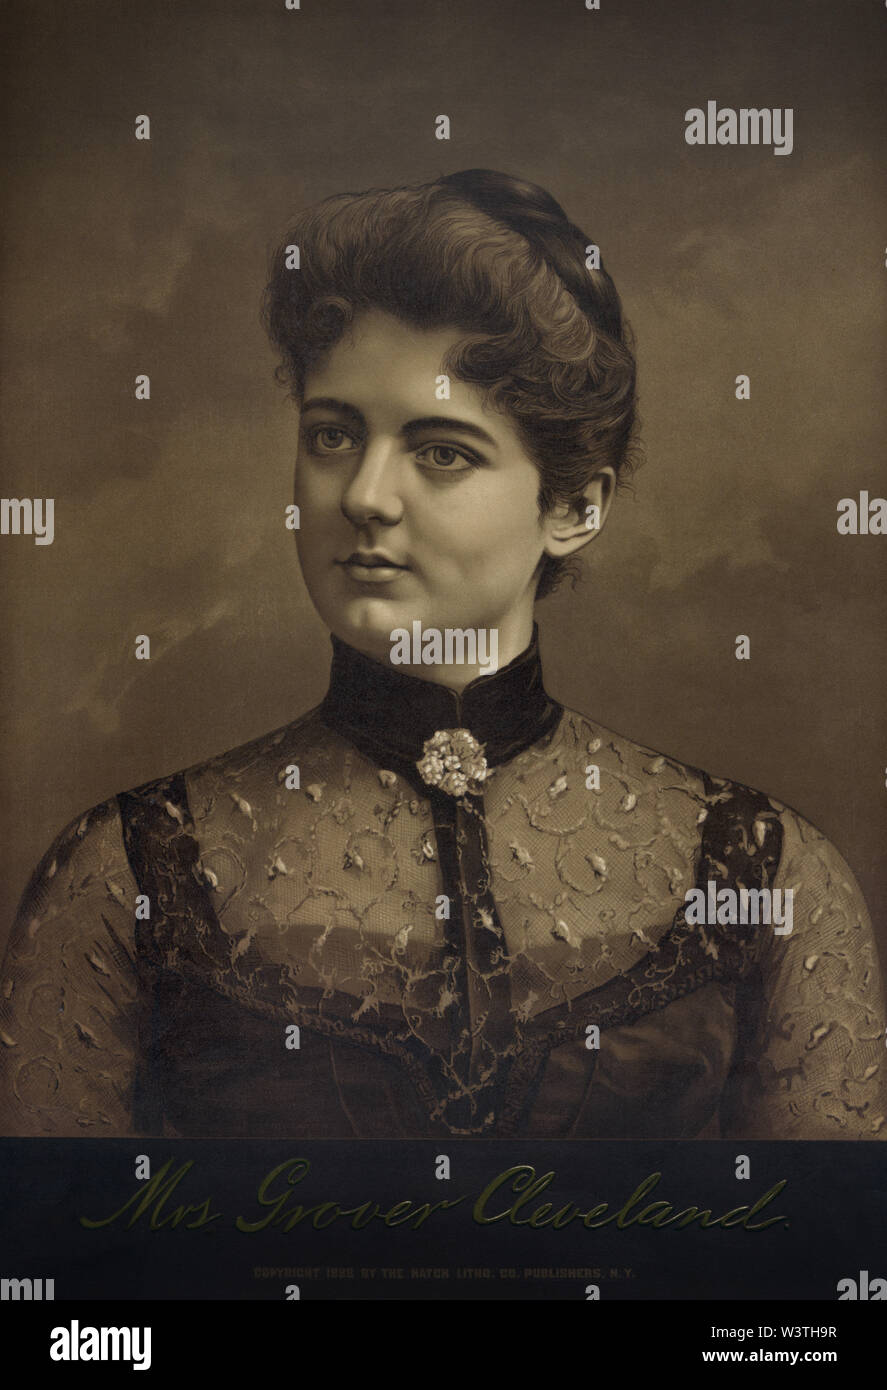 Frau Grover Cleveland, Lithographie von Luke lithographischen Co., 1888 veröffentlicht. Stockfoto